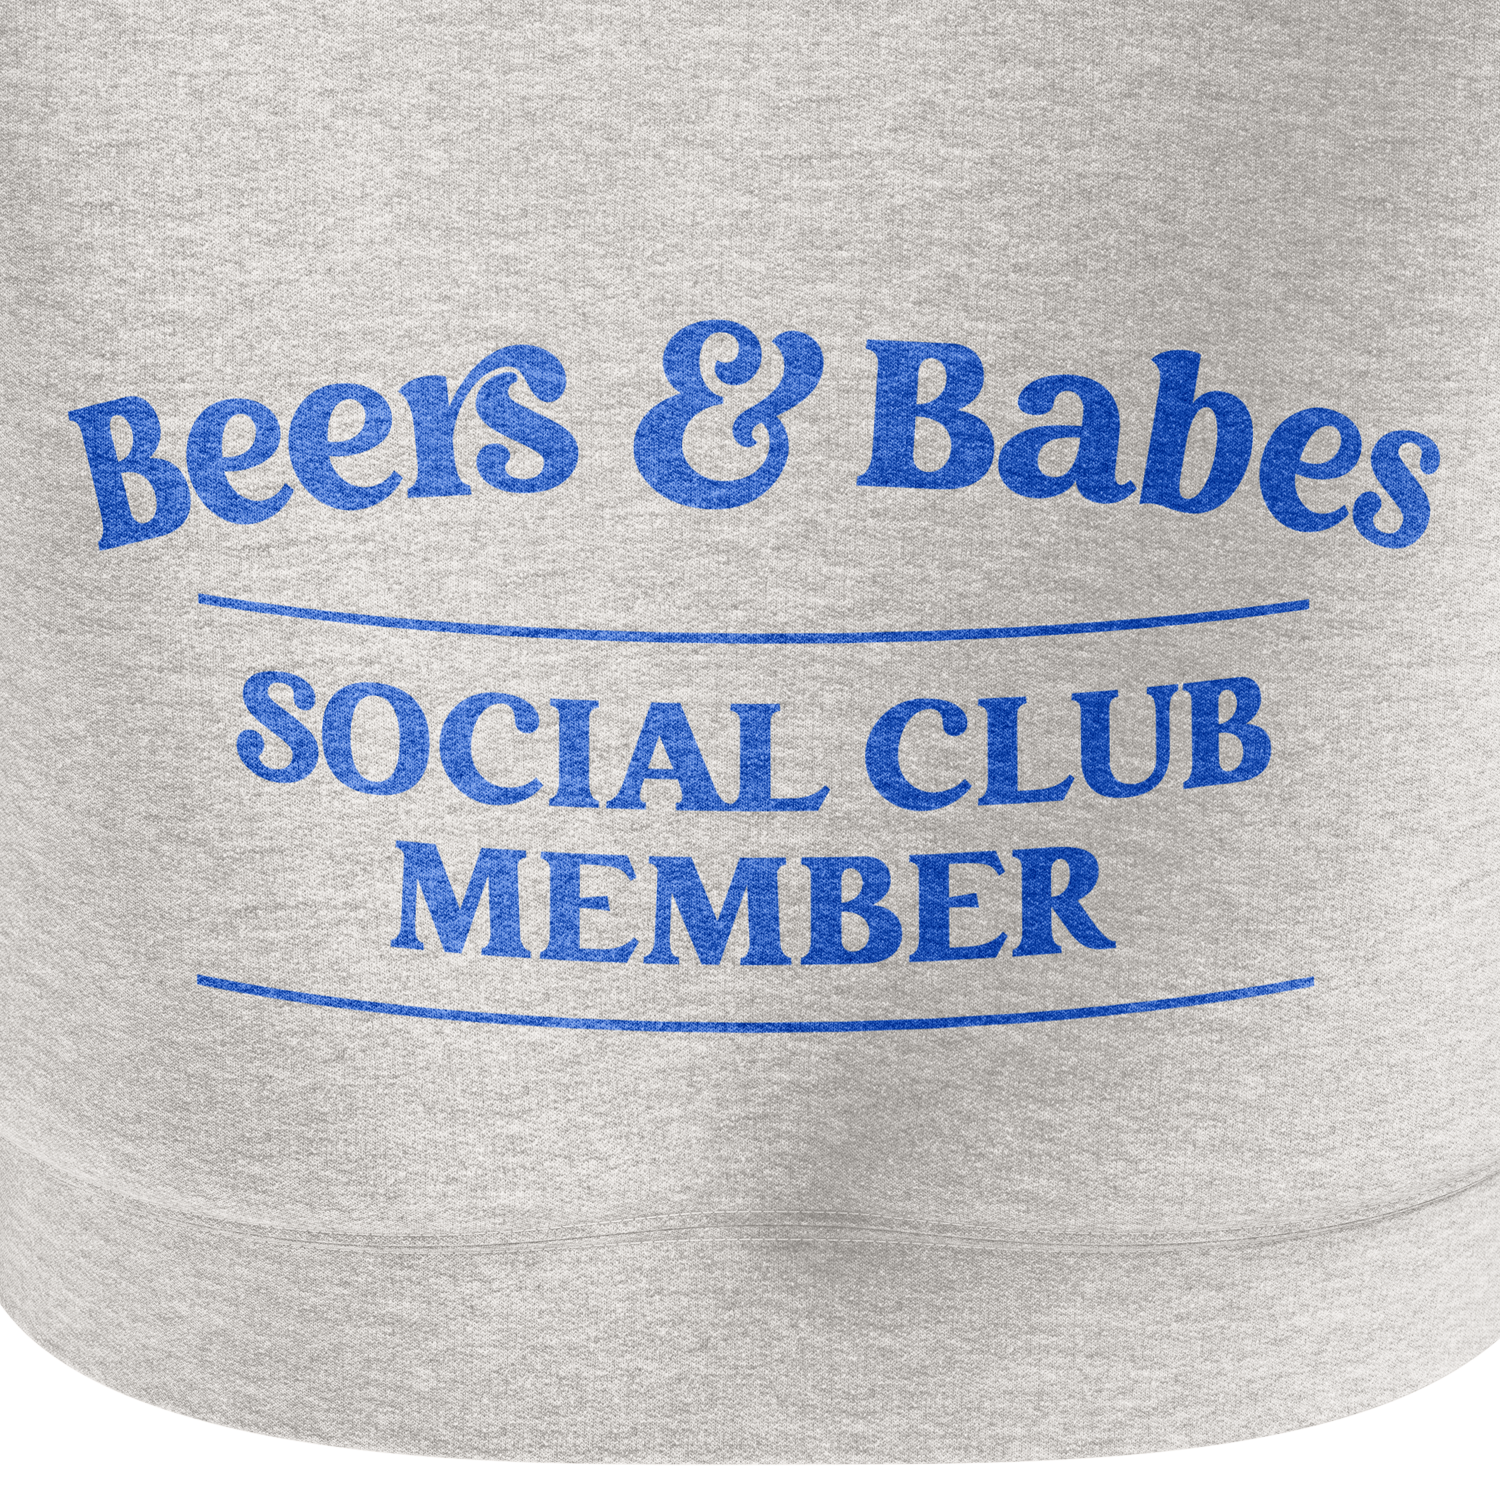 B & B SOCIAL CLUB HOODIE